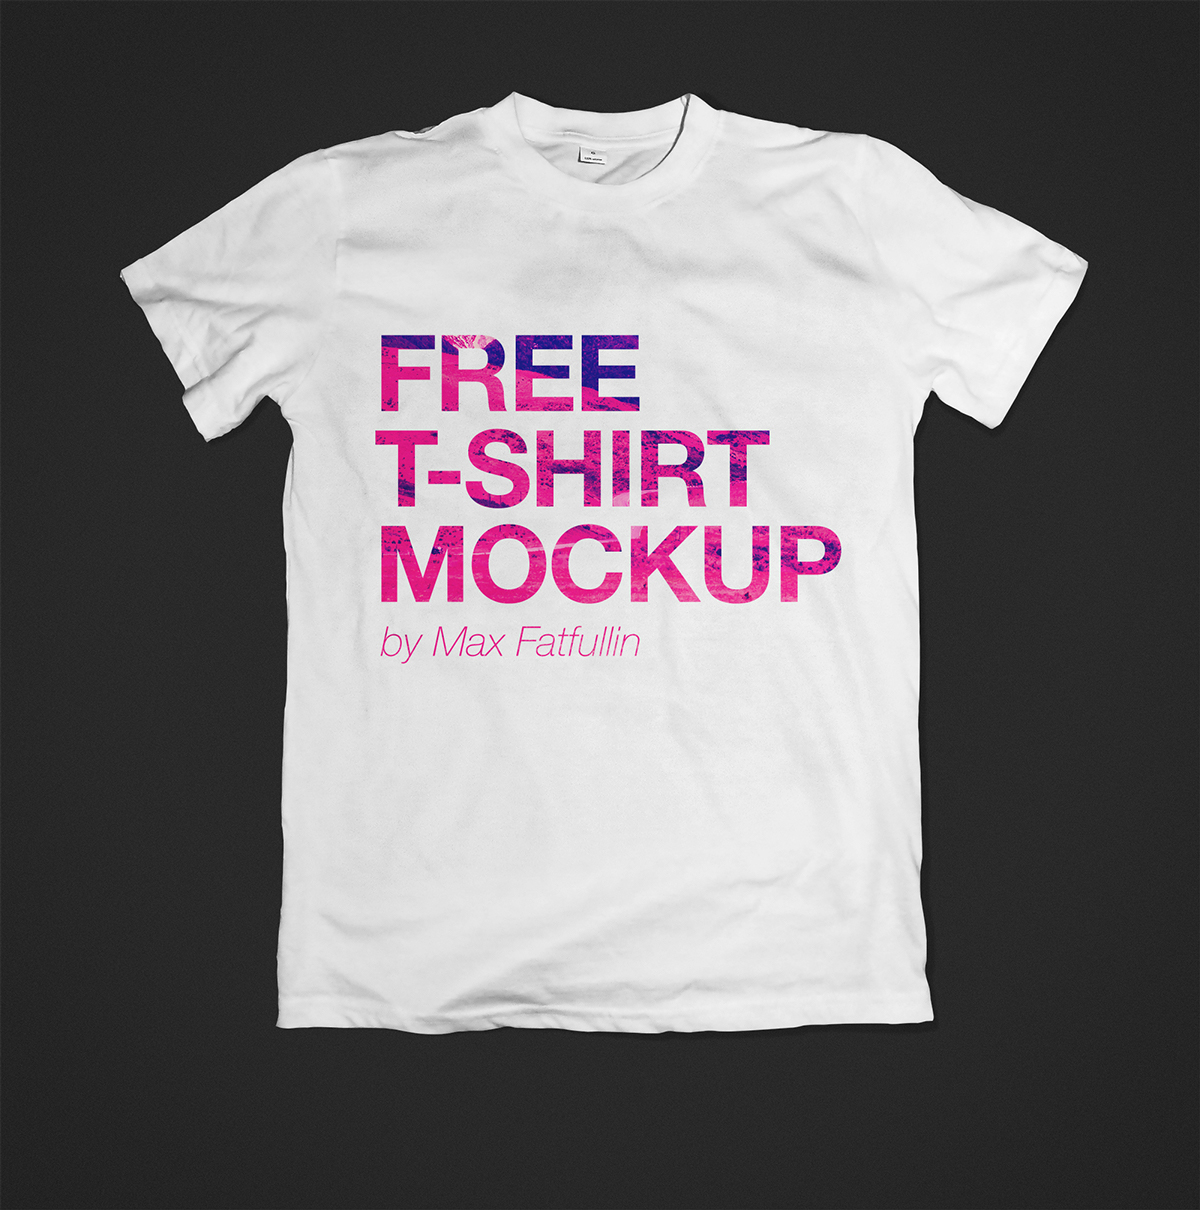 Shirt Mockup Photoshop Free